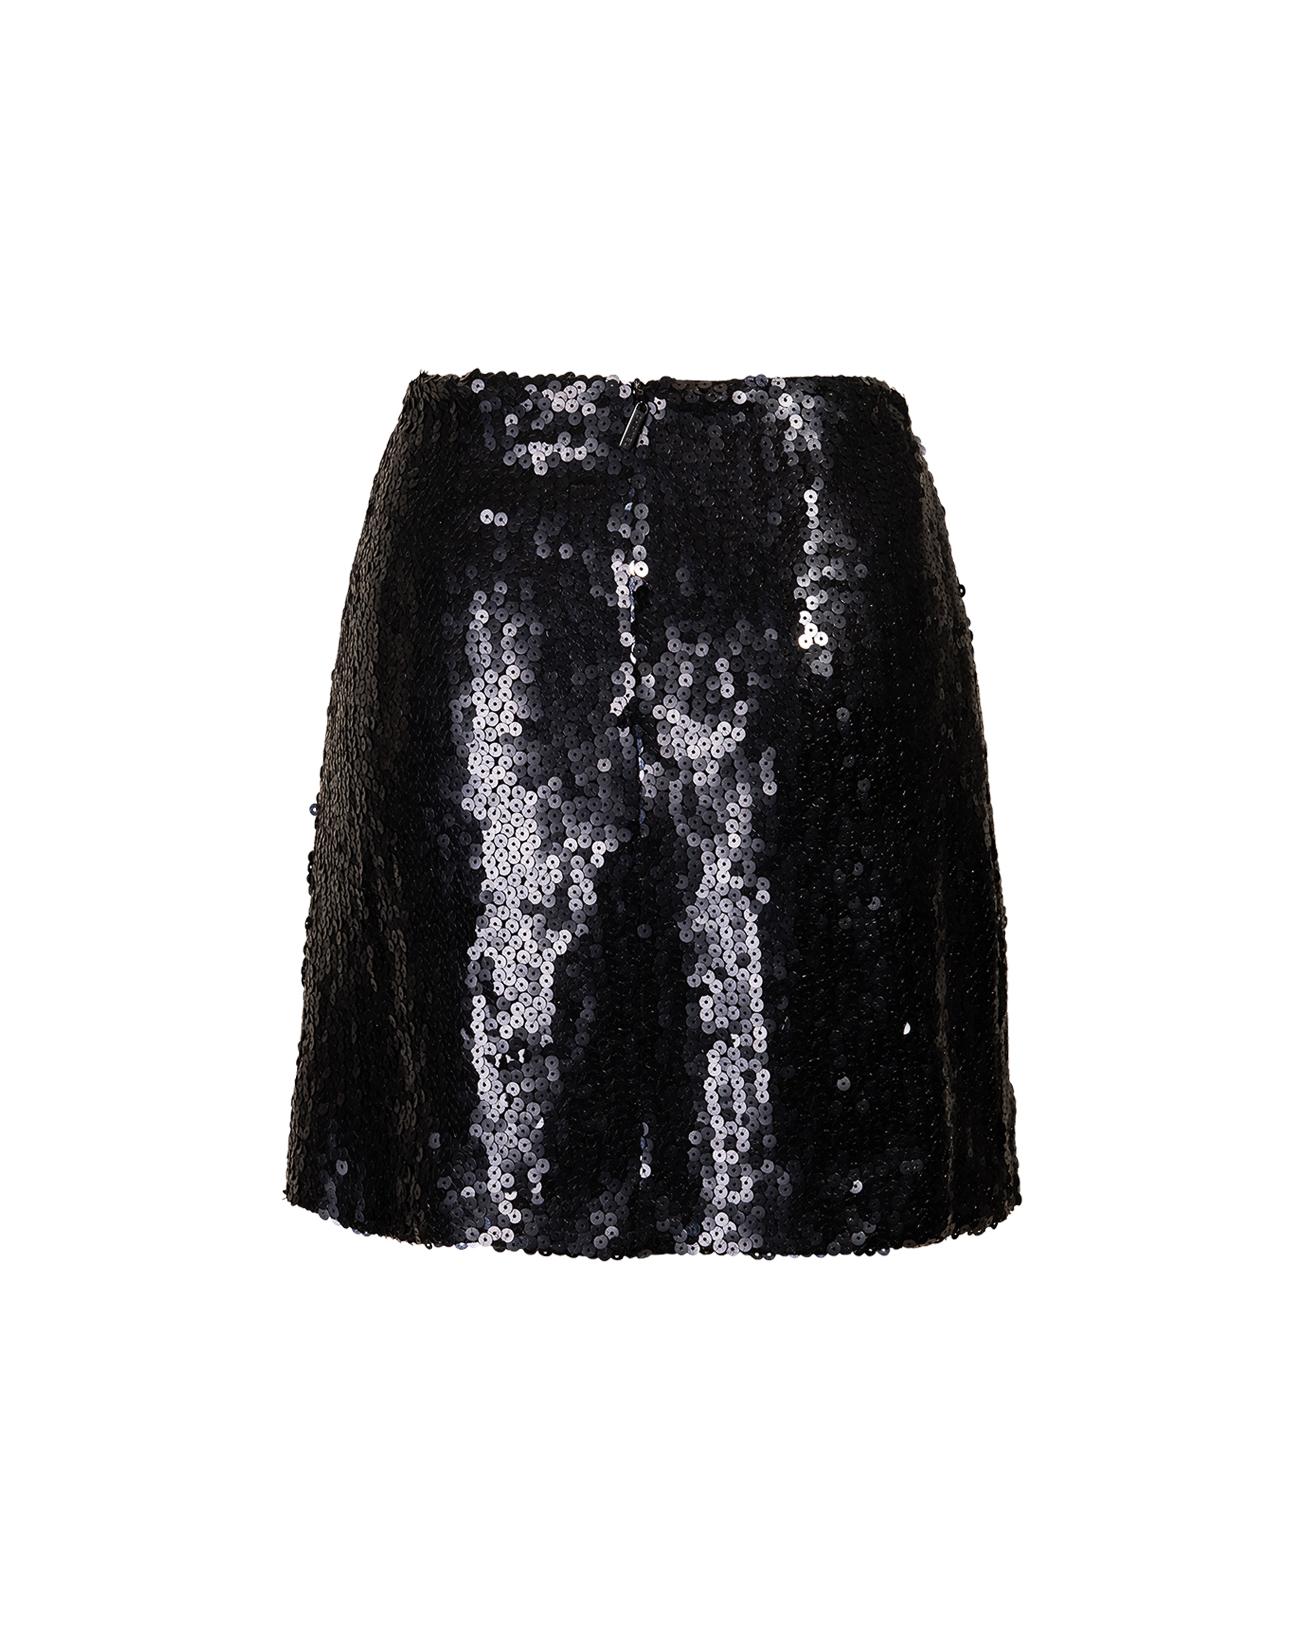 sparkly black skirt